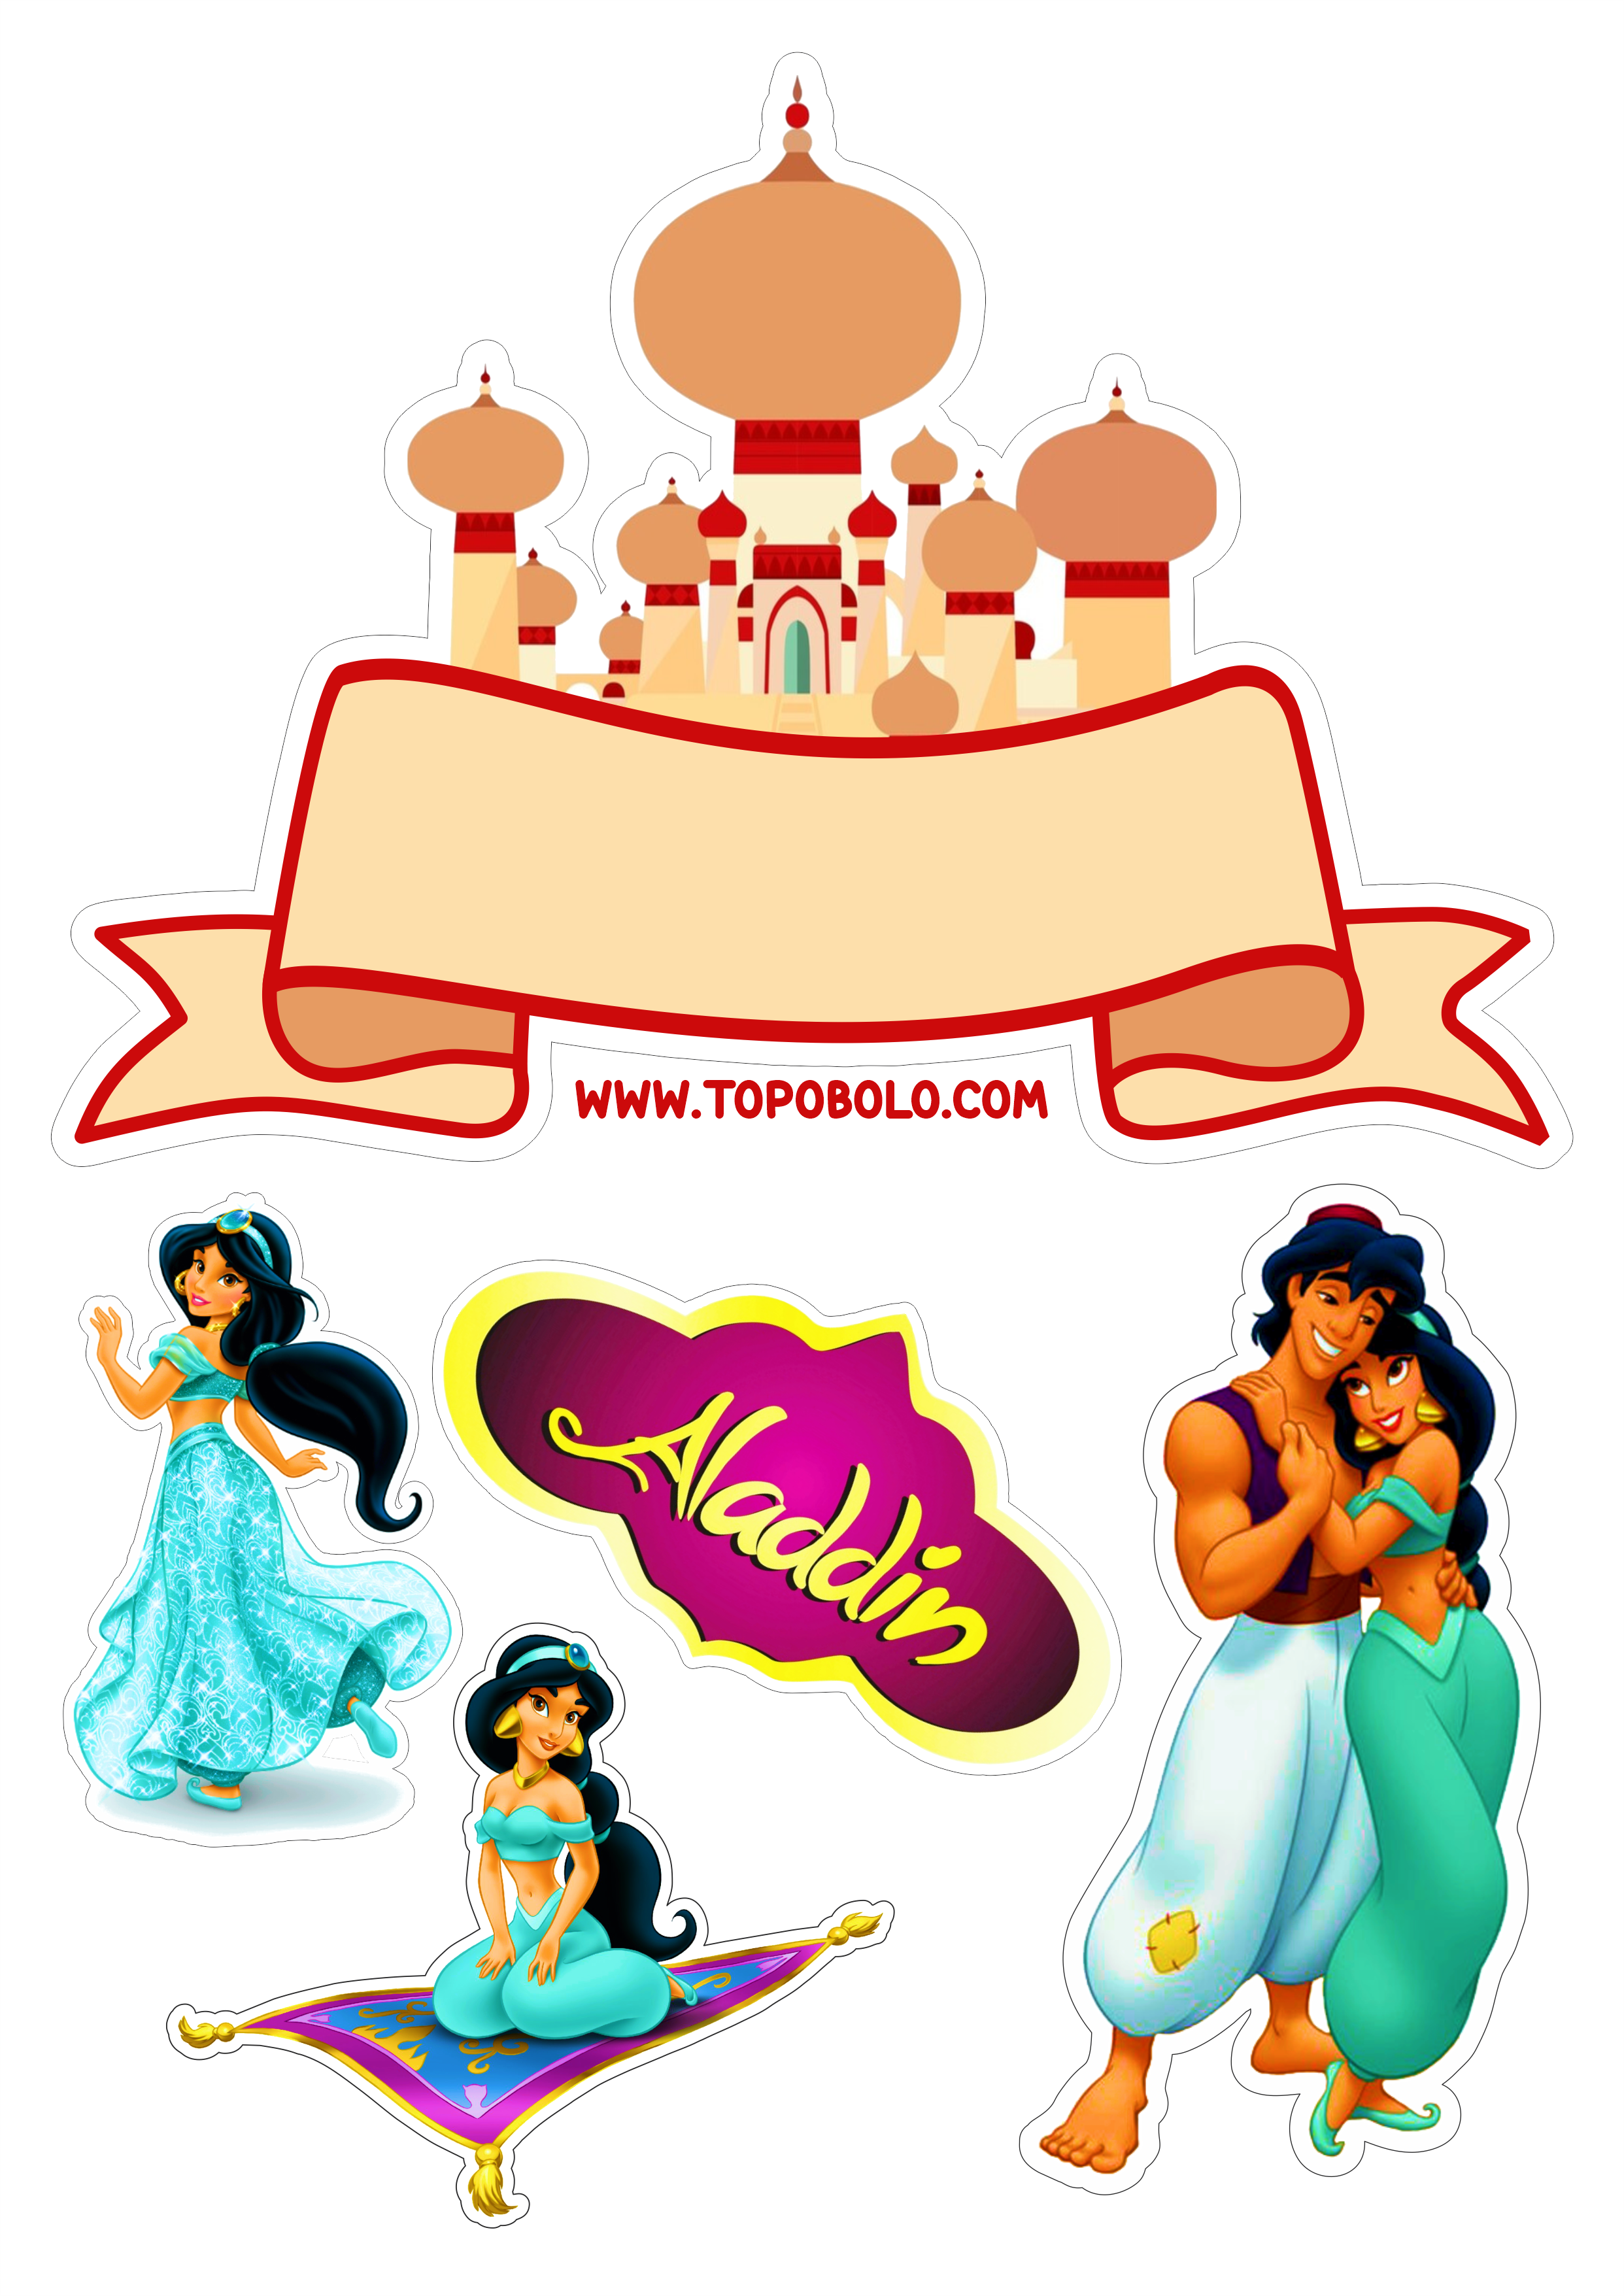 Aladdin e princesas Jasmine topo de bolo gênio iago abu rajah png